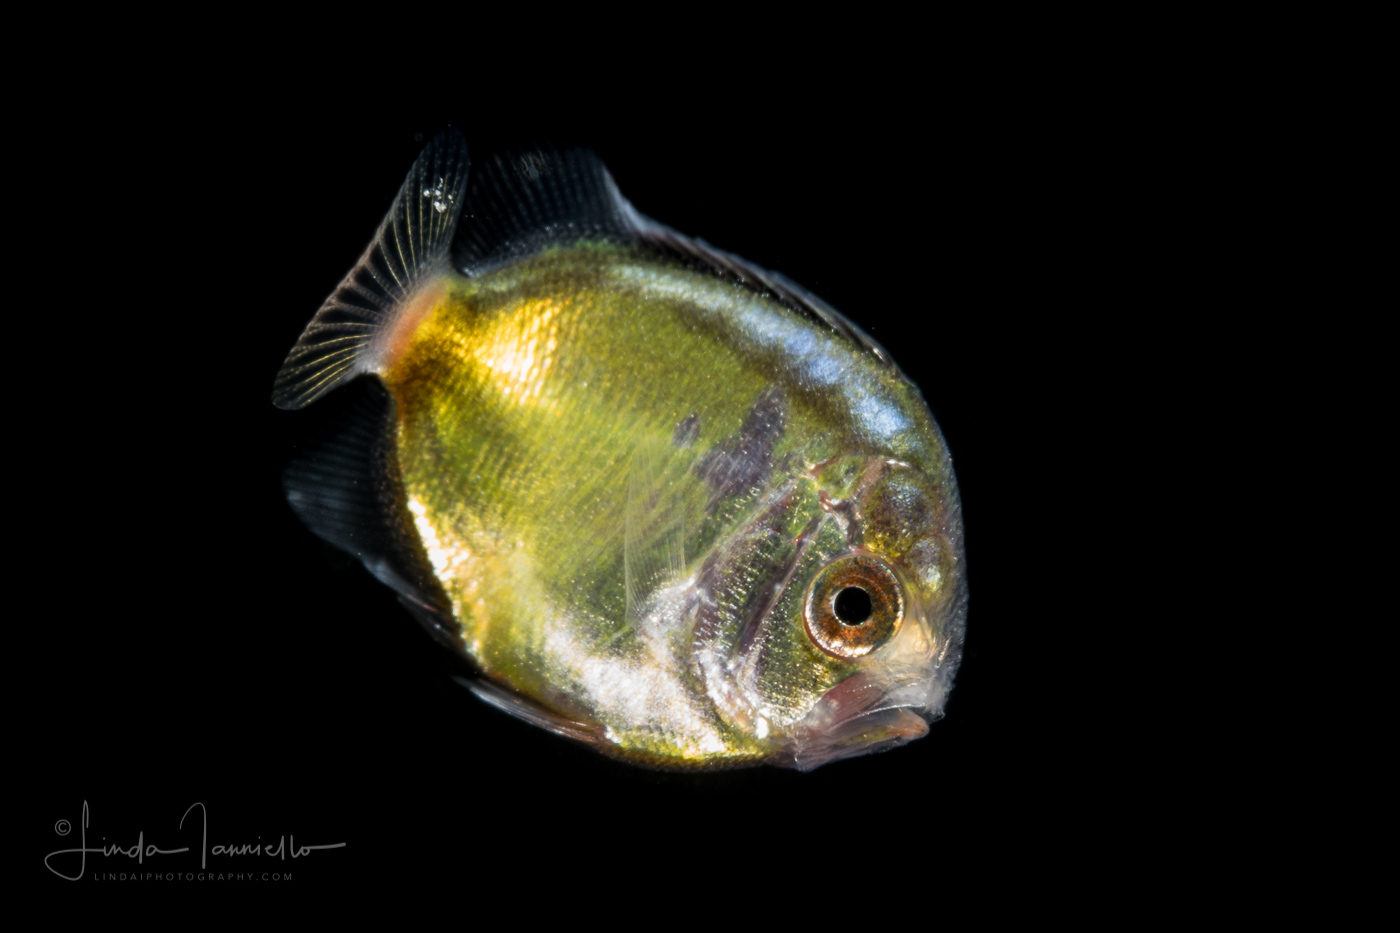 Angelfish - Cherubfish - Pomacanthidae Family - Centropyge argi